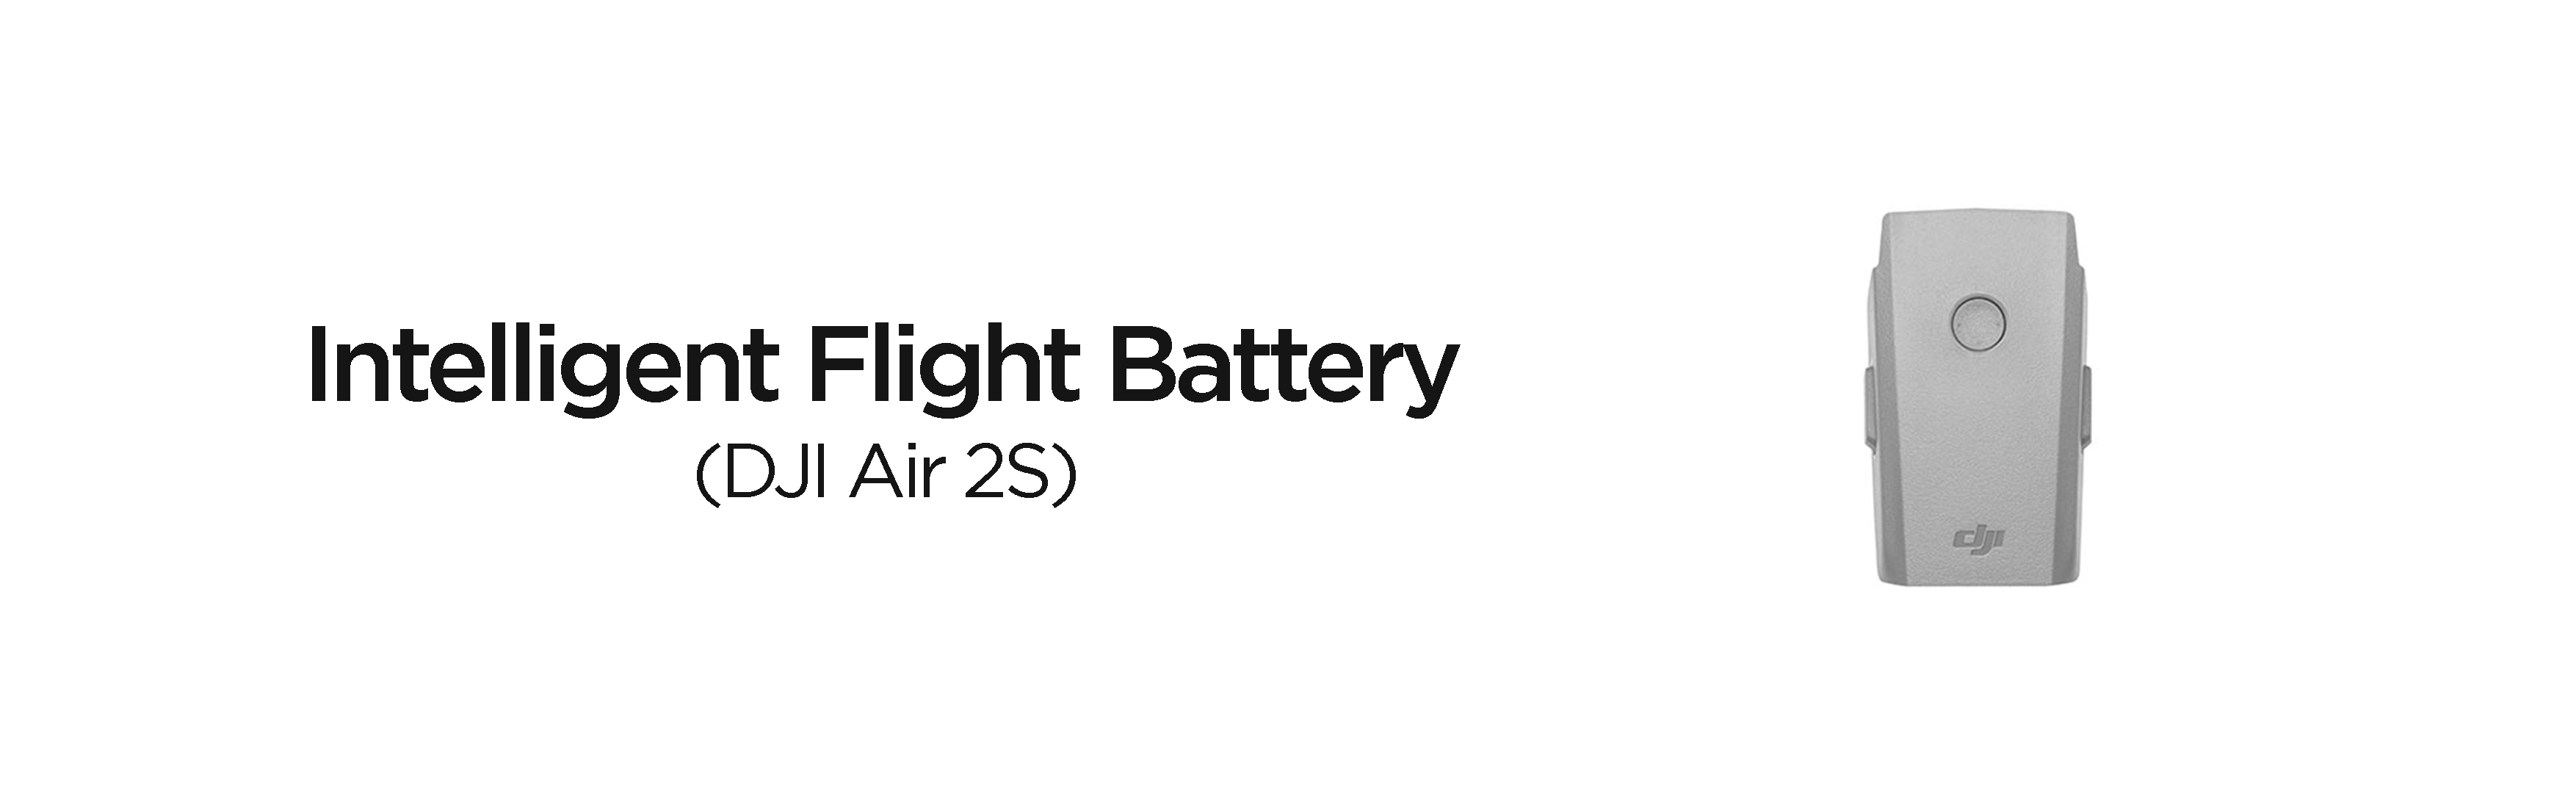 DJI Mavic Air 2 Intelligent Flight Battery Must Have Accessories